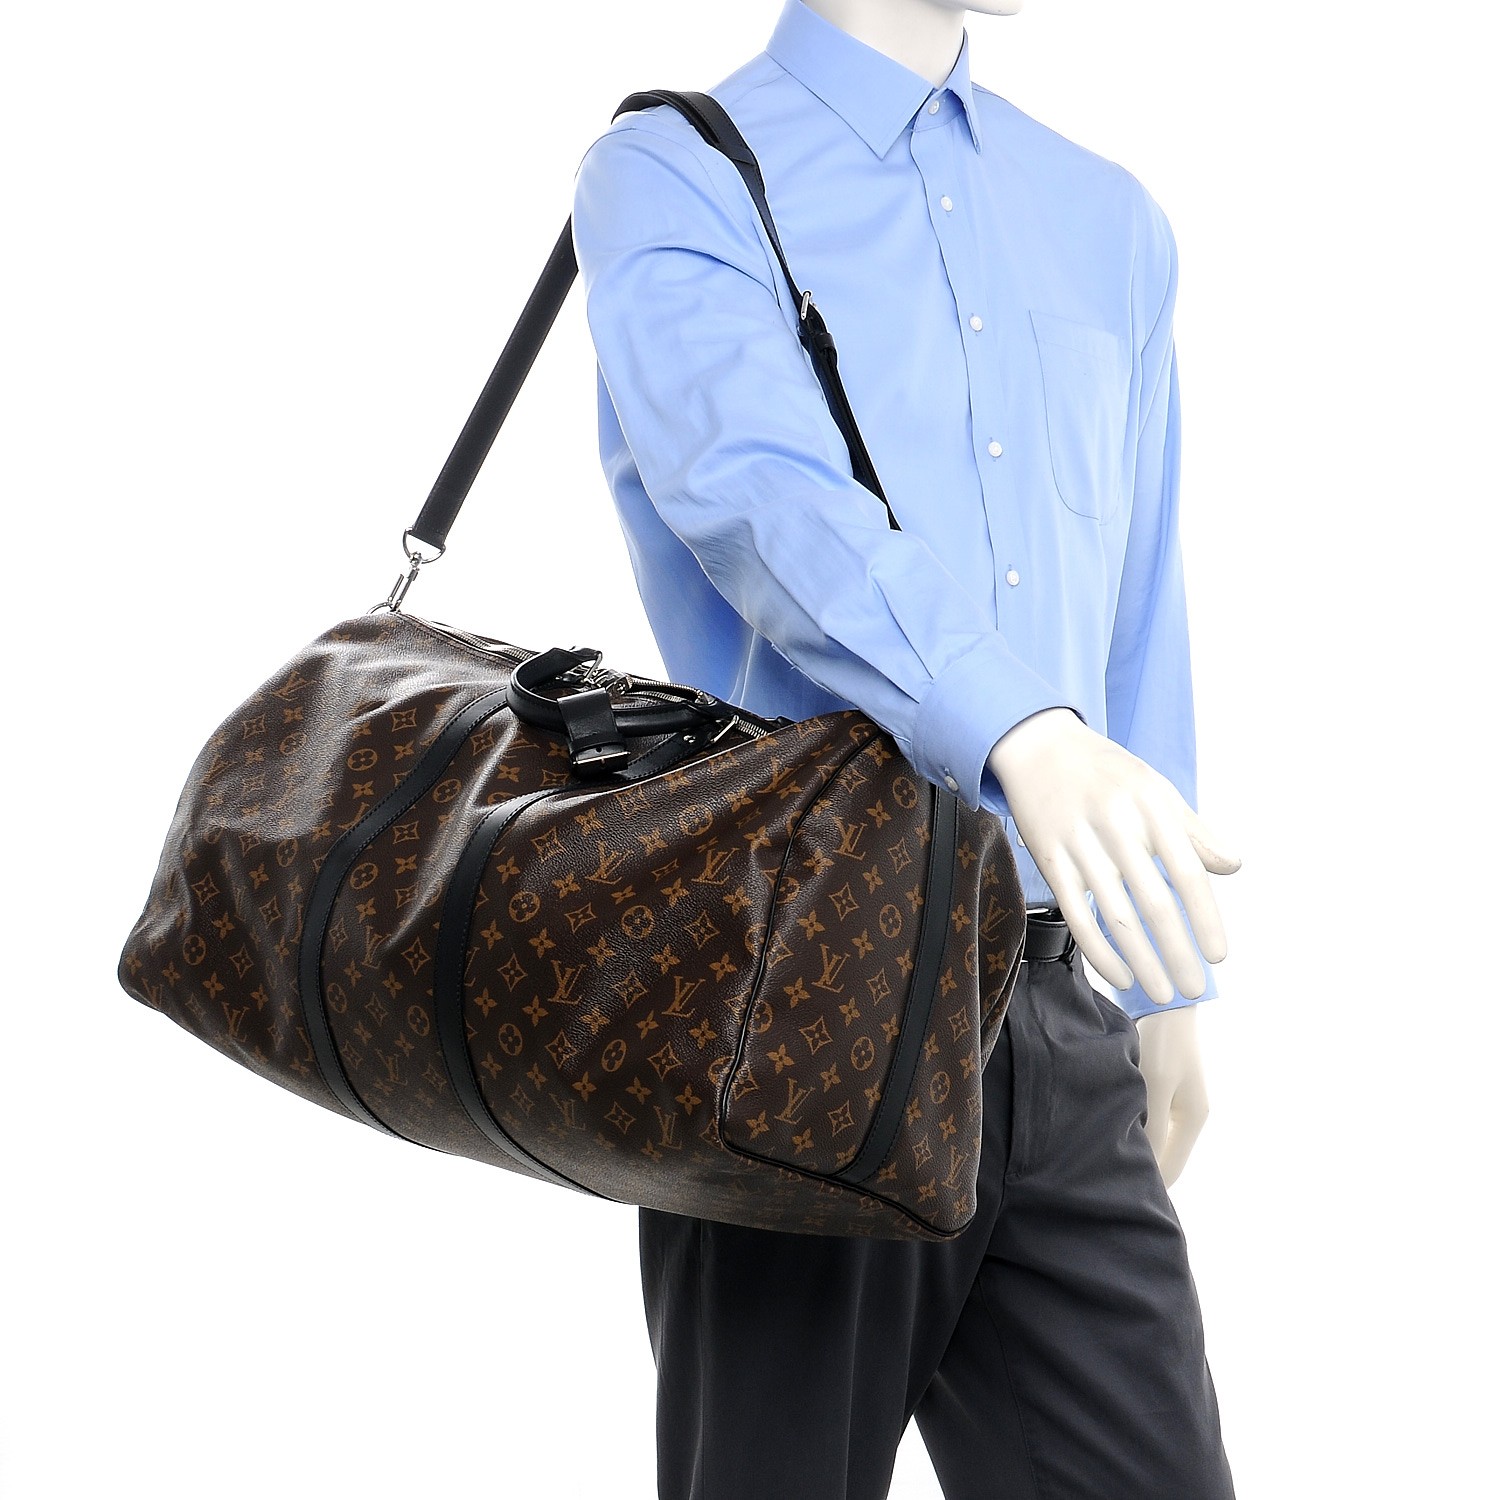 LOUIS VUITTON Keepall Bandouliere 55 Monogram Macassar Travel Bag Brow